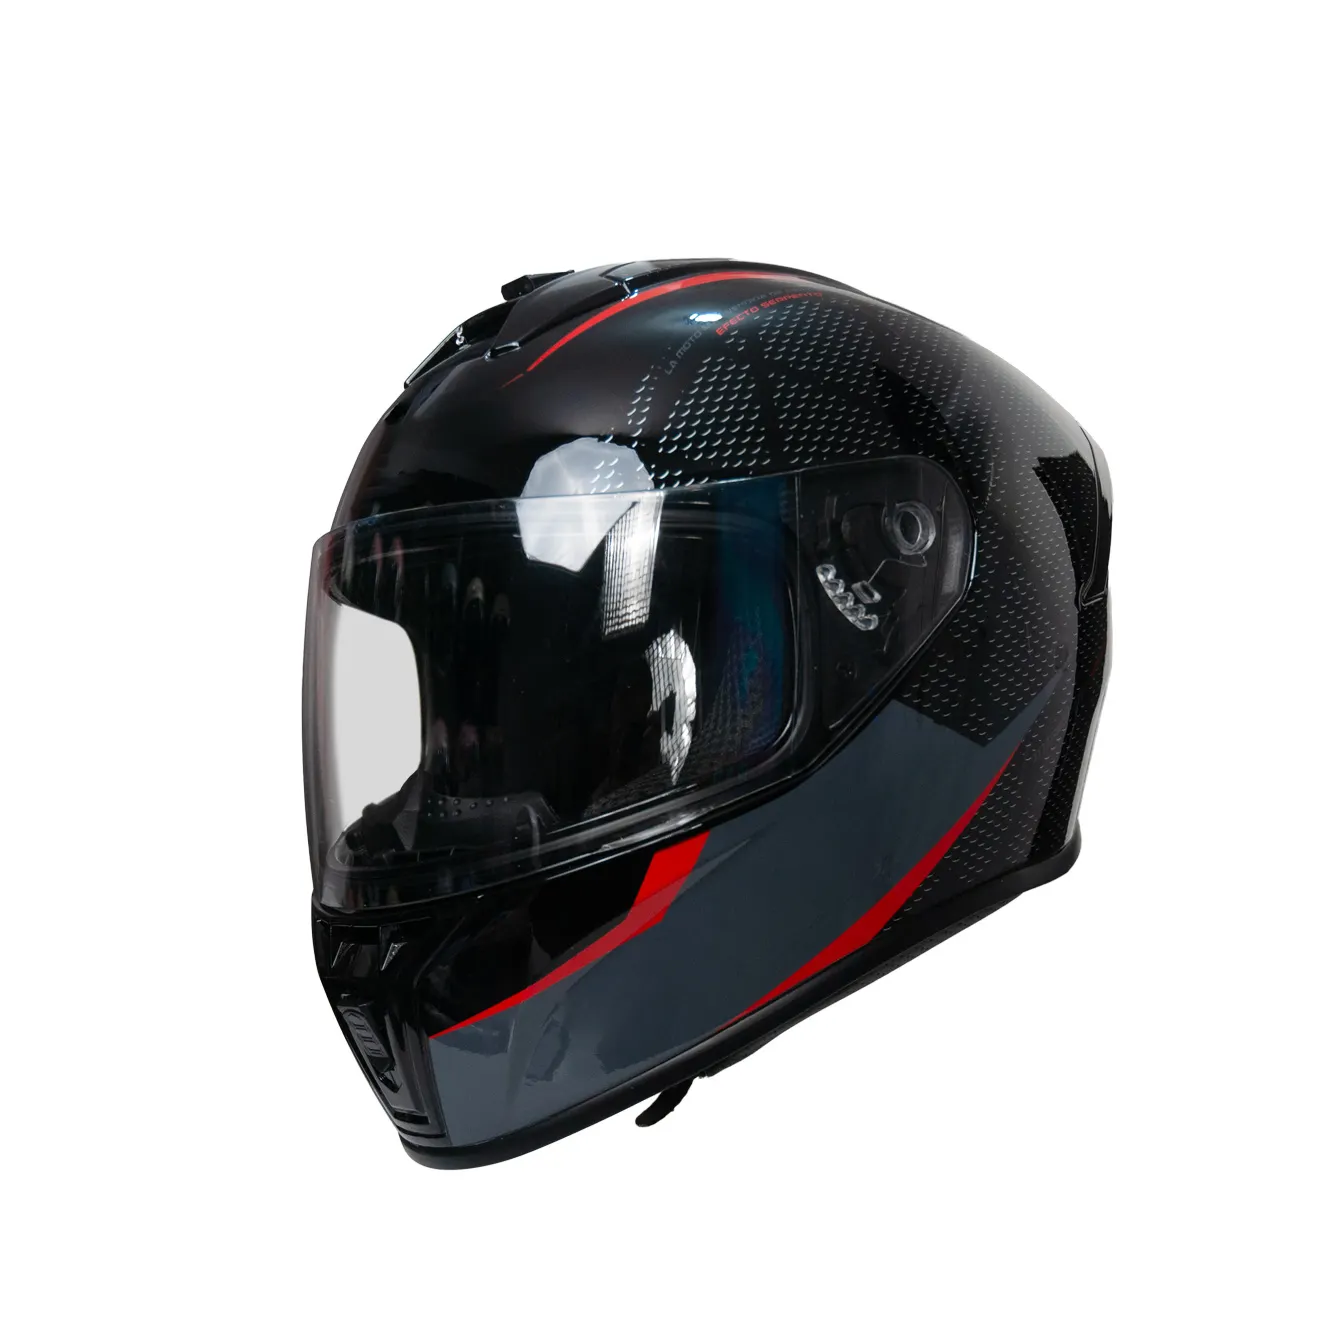 DOT Racing doble visera cara completa accesorios de motocicleta cascos casco motocicleta para adulto